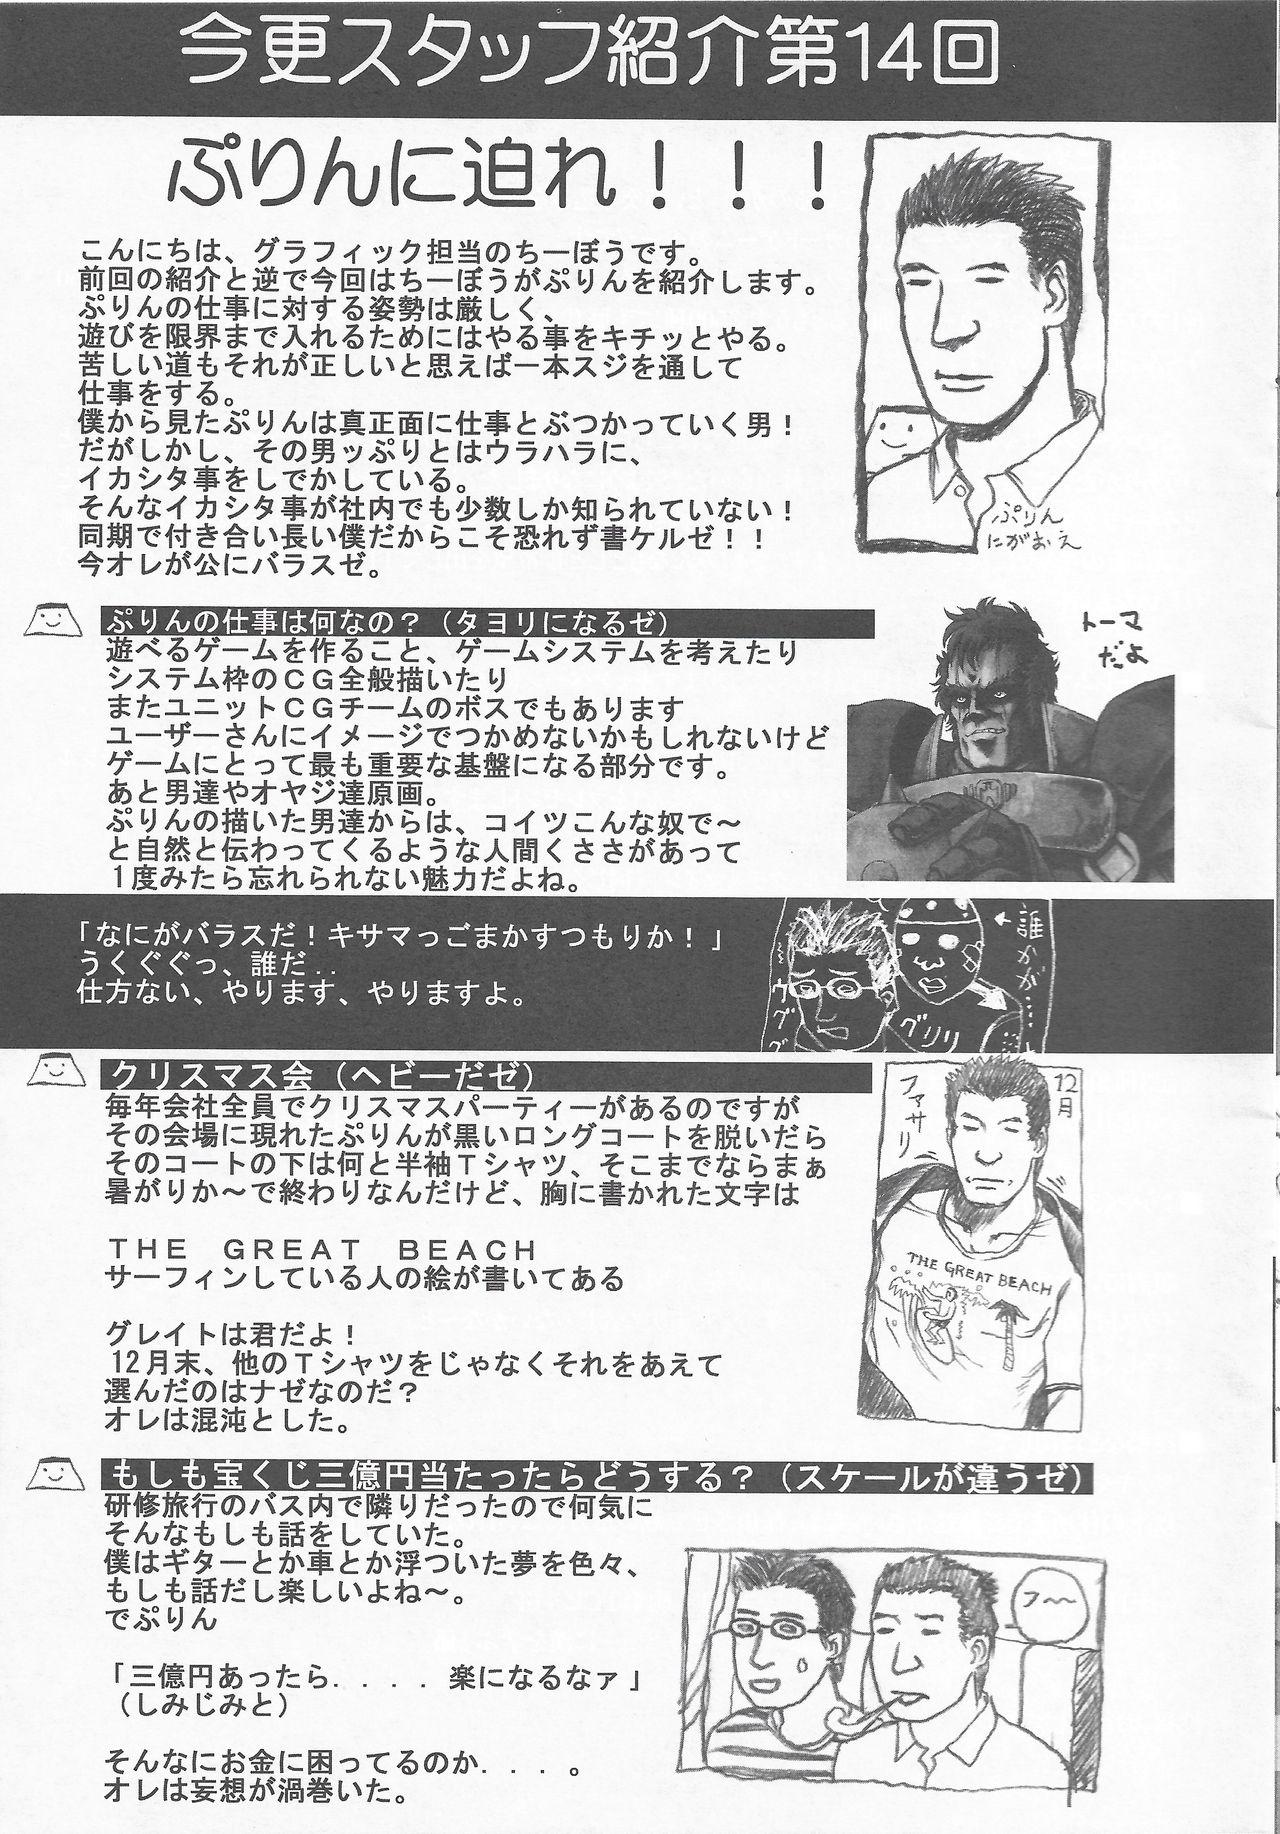 Arisu no Denchi Bakudan Vol. 19 19